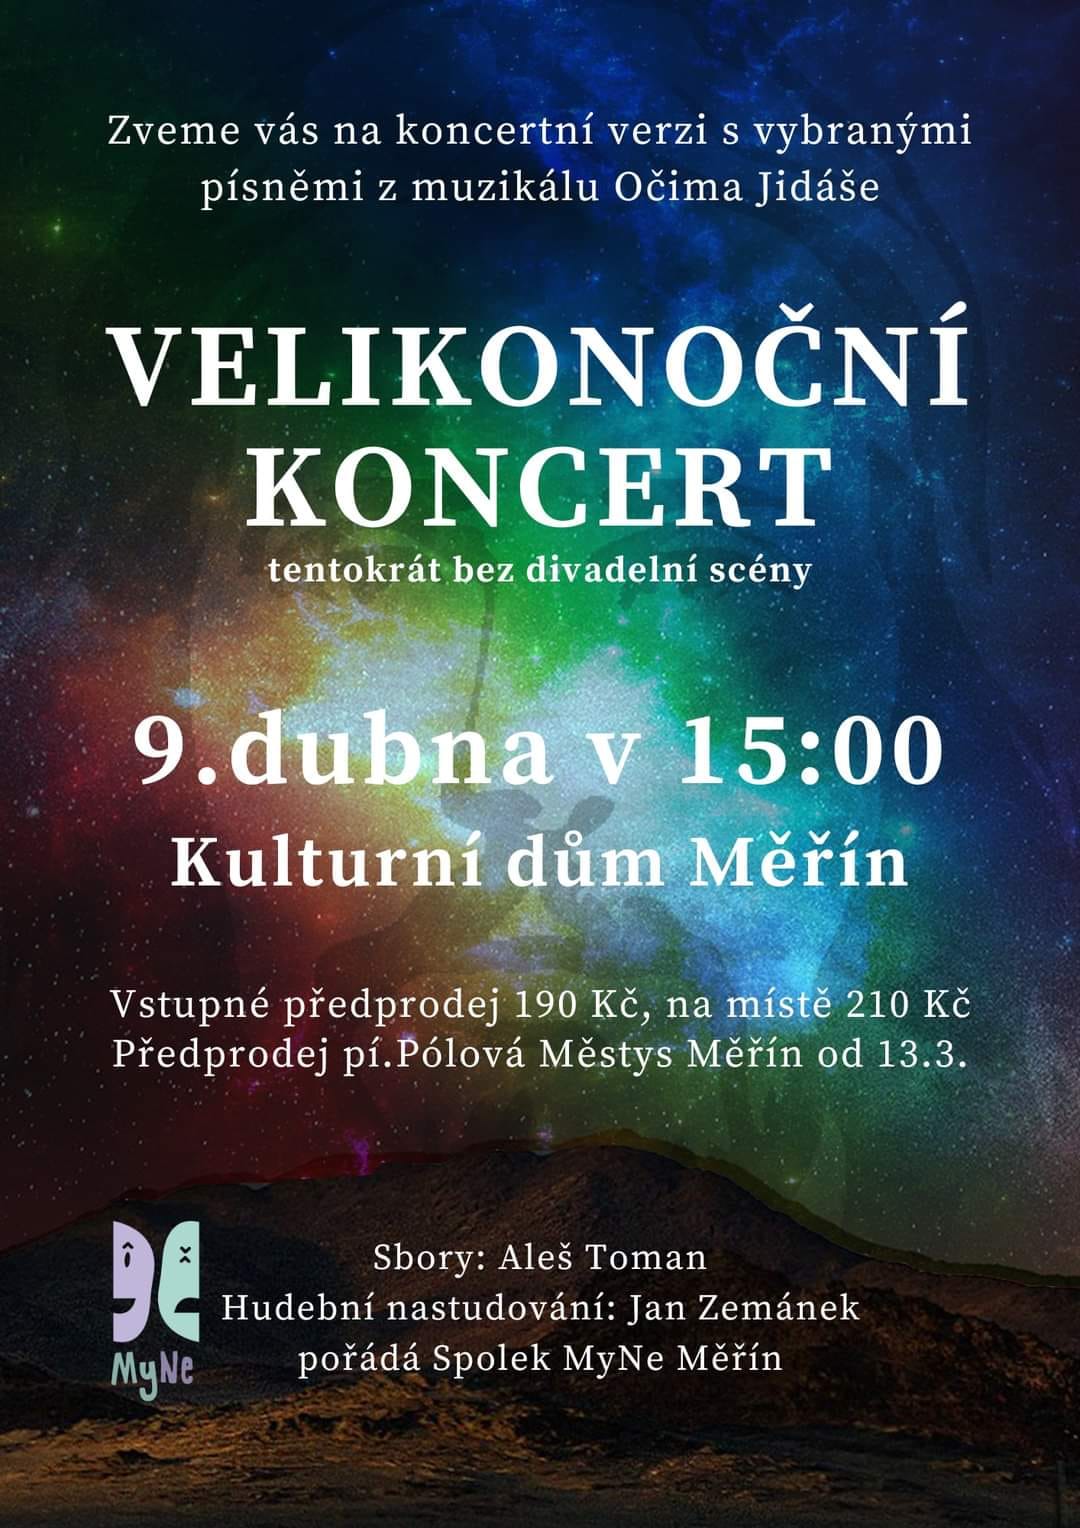 Divadlo Ikaros děkuje za přízeň a zve na Velikonoční koncert v Měříně